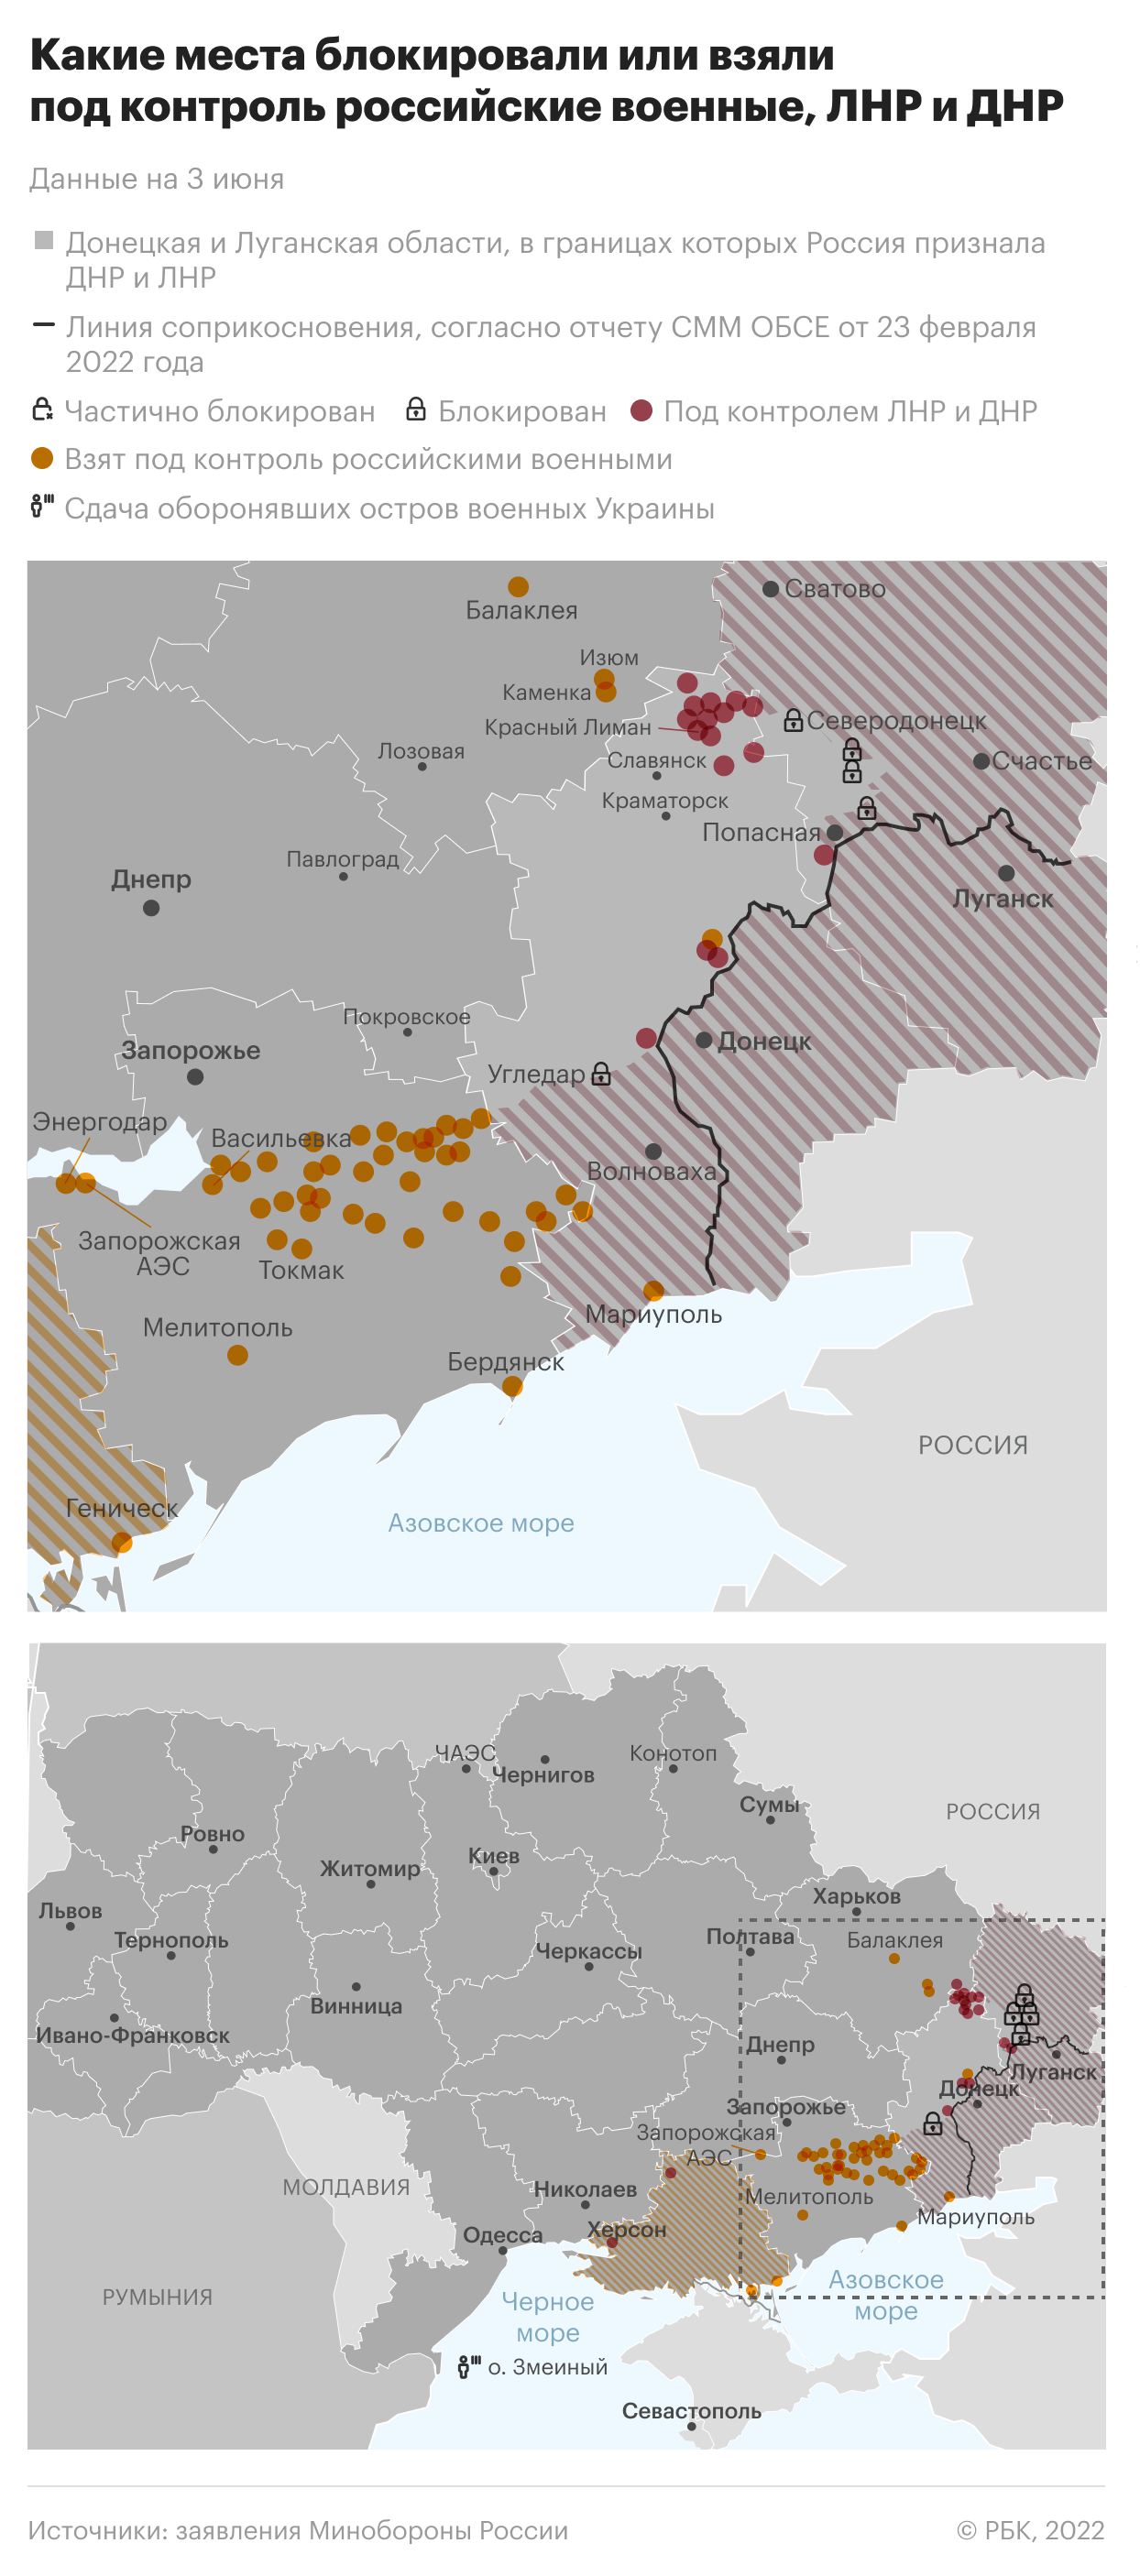 Минобороны сообщило о сбитых украинских Ан-26 и МиГ-29"/>













